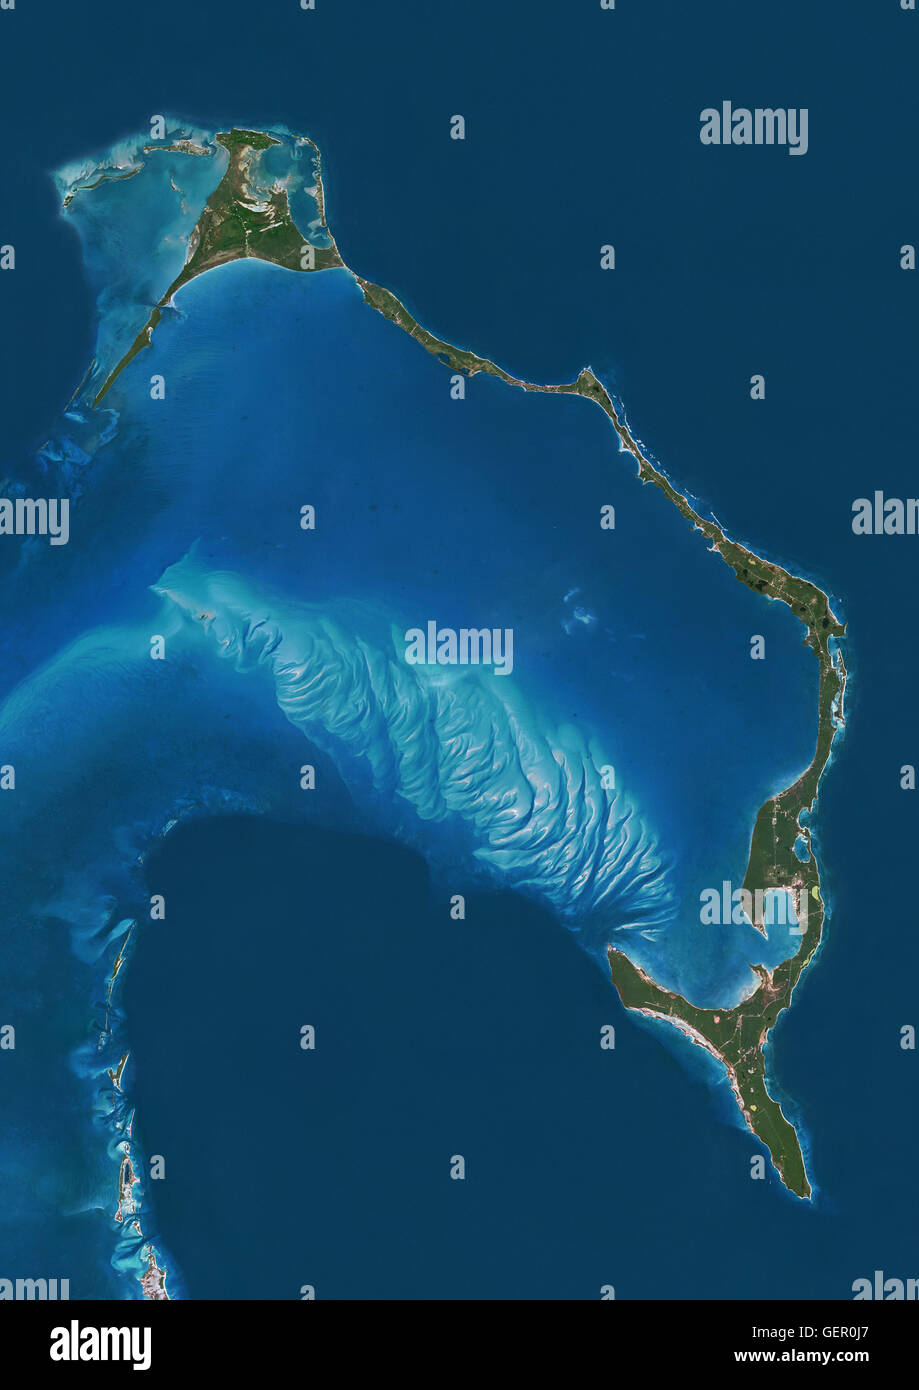 Satellitenansicht der Insel Eleuthera, Bahamas. Dieses Bild wurde aus Daten von Landsat-Satelliten erworben erstellt. Stockfoto